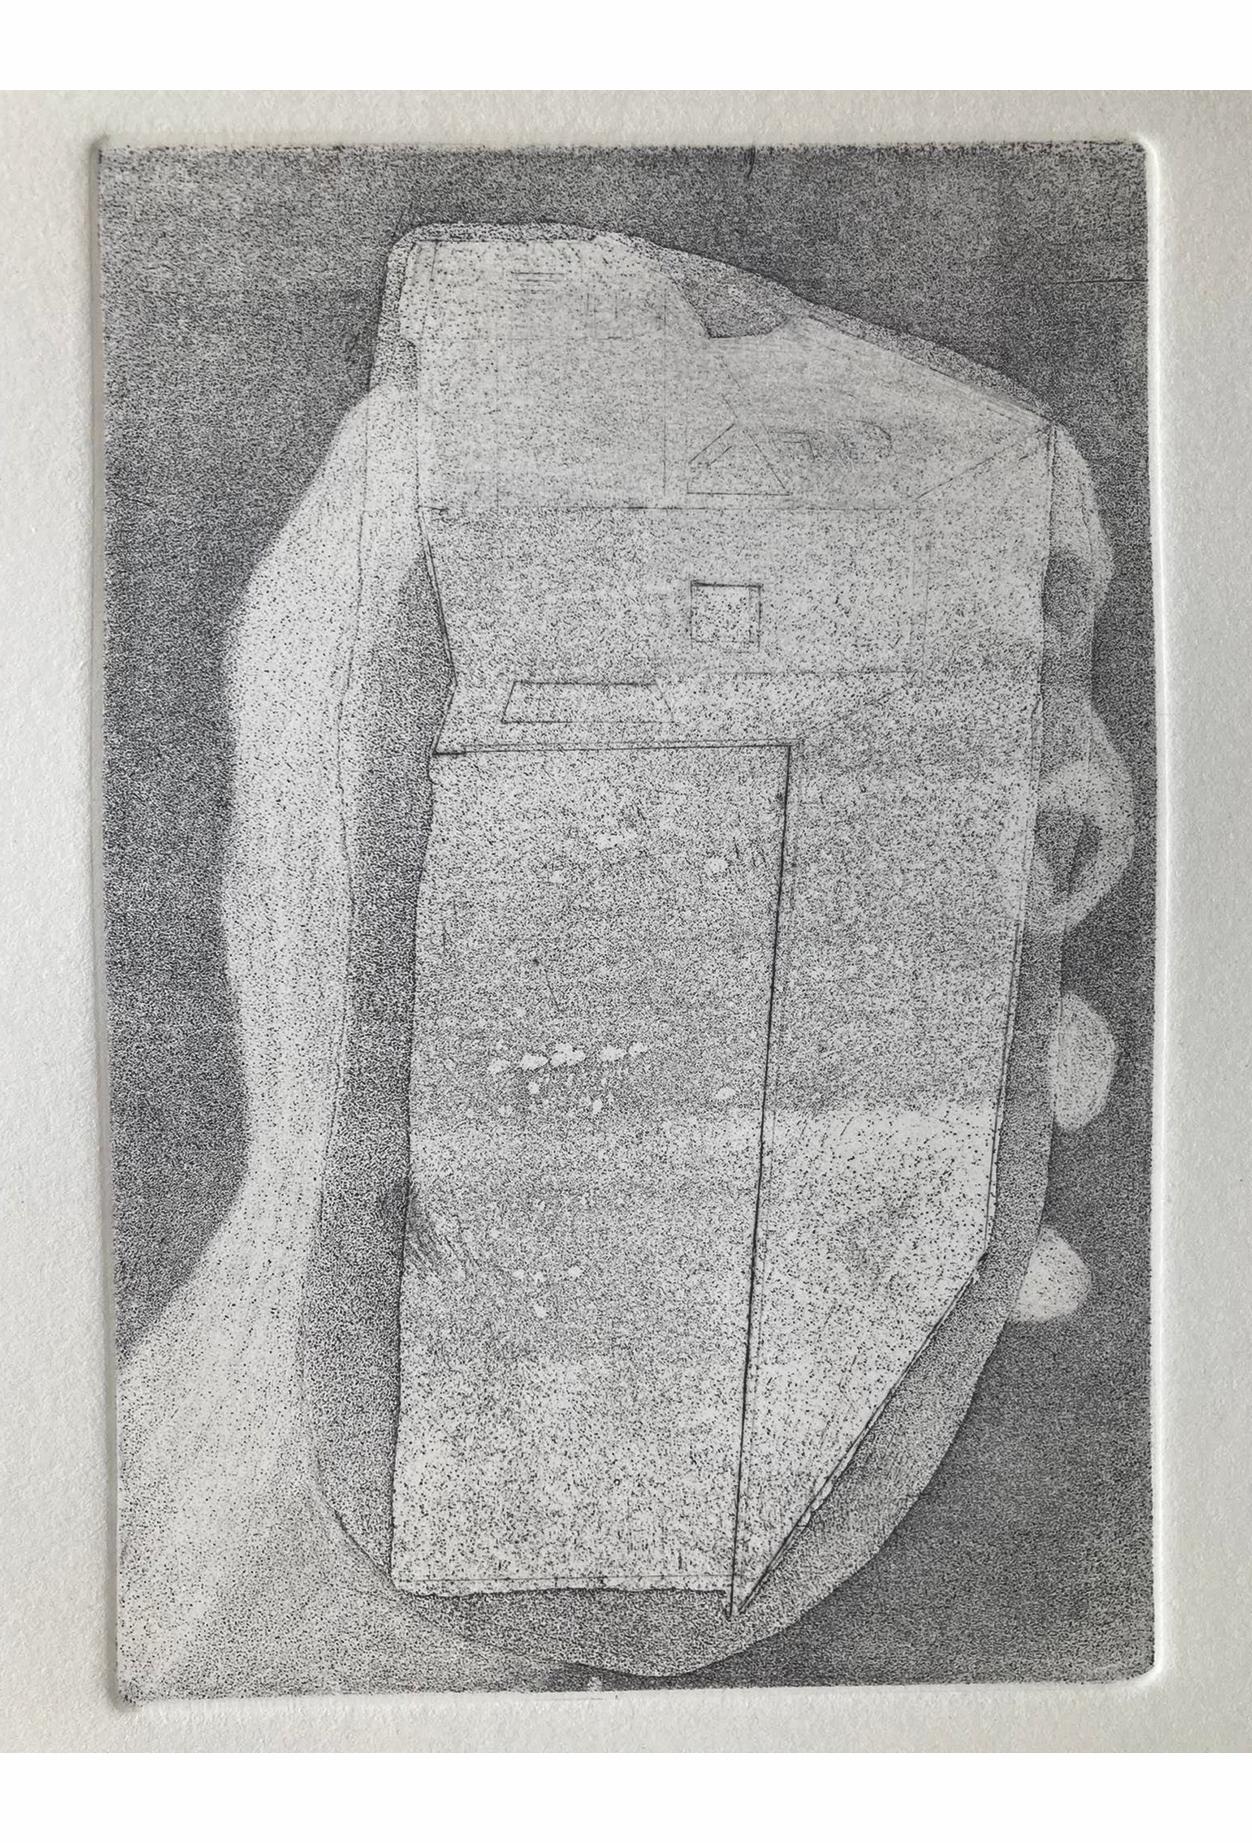 Sophie Preumont, Maison, 14 x 19 cm, Eau-forte et pointe sèche, 2022